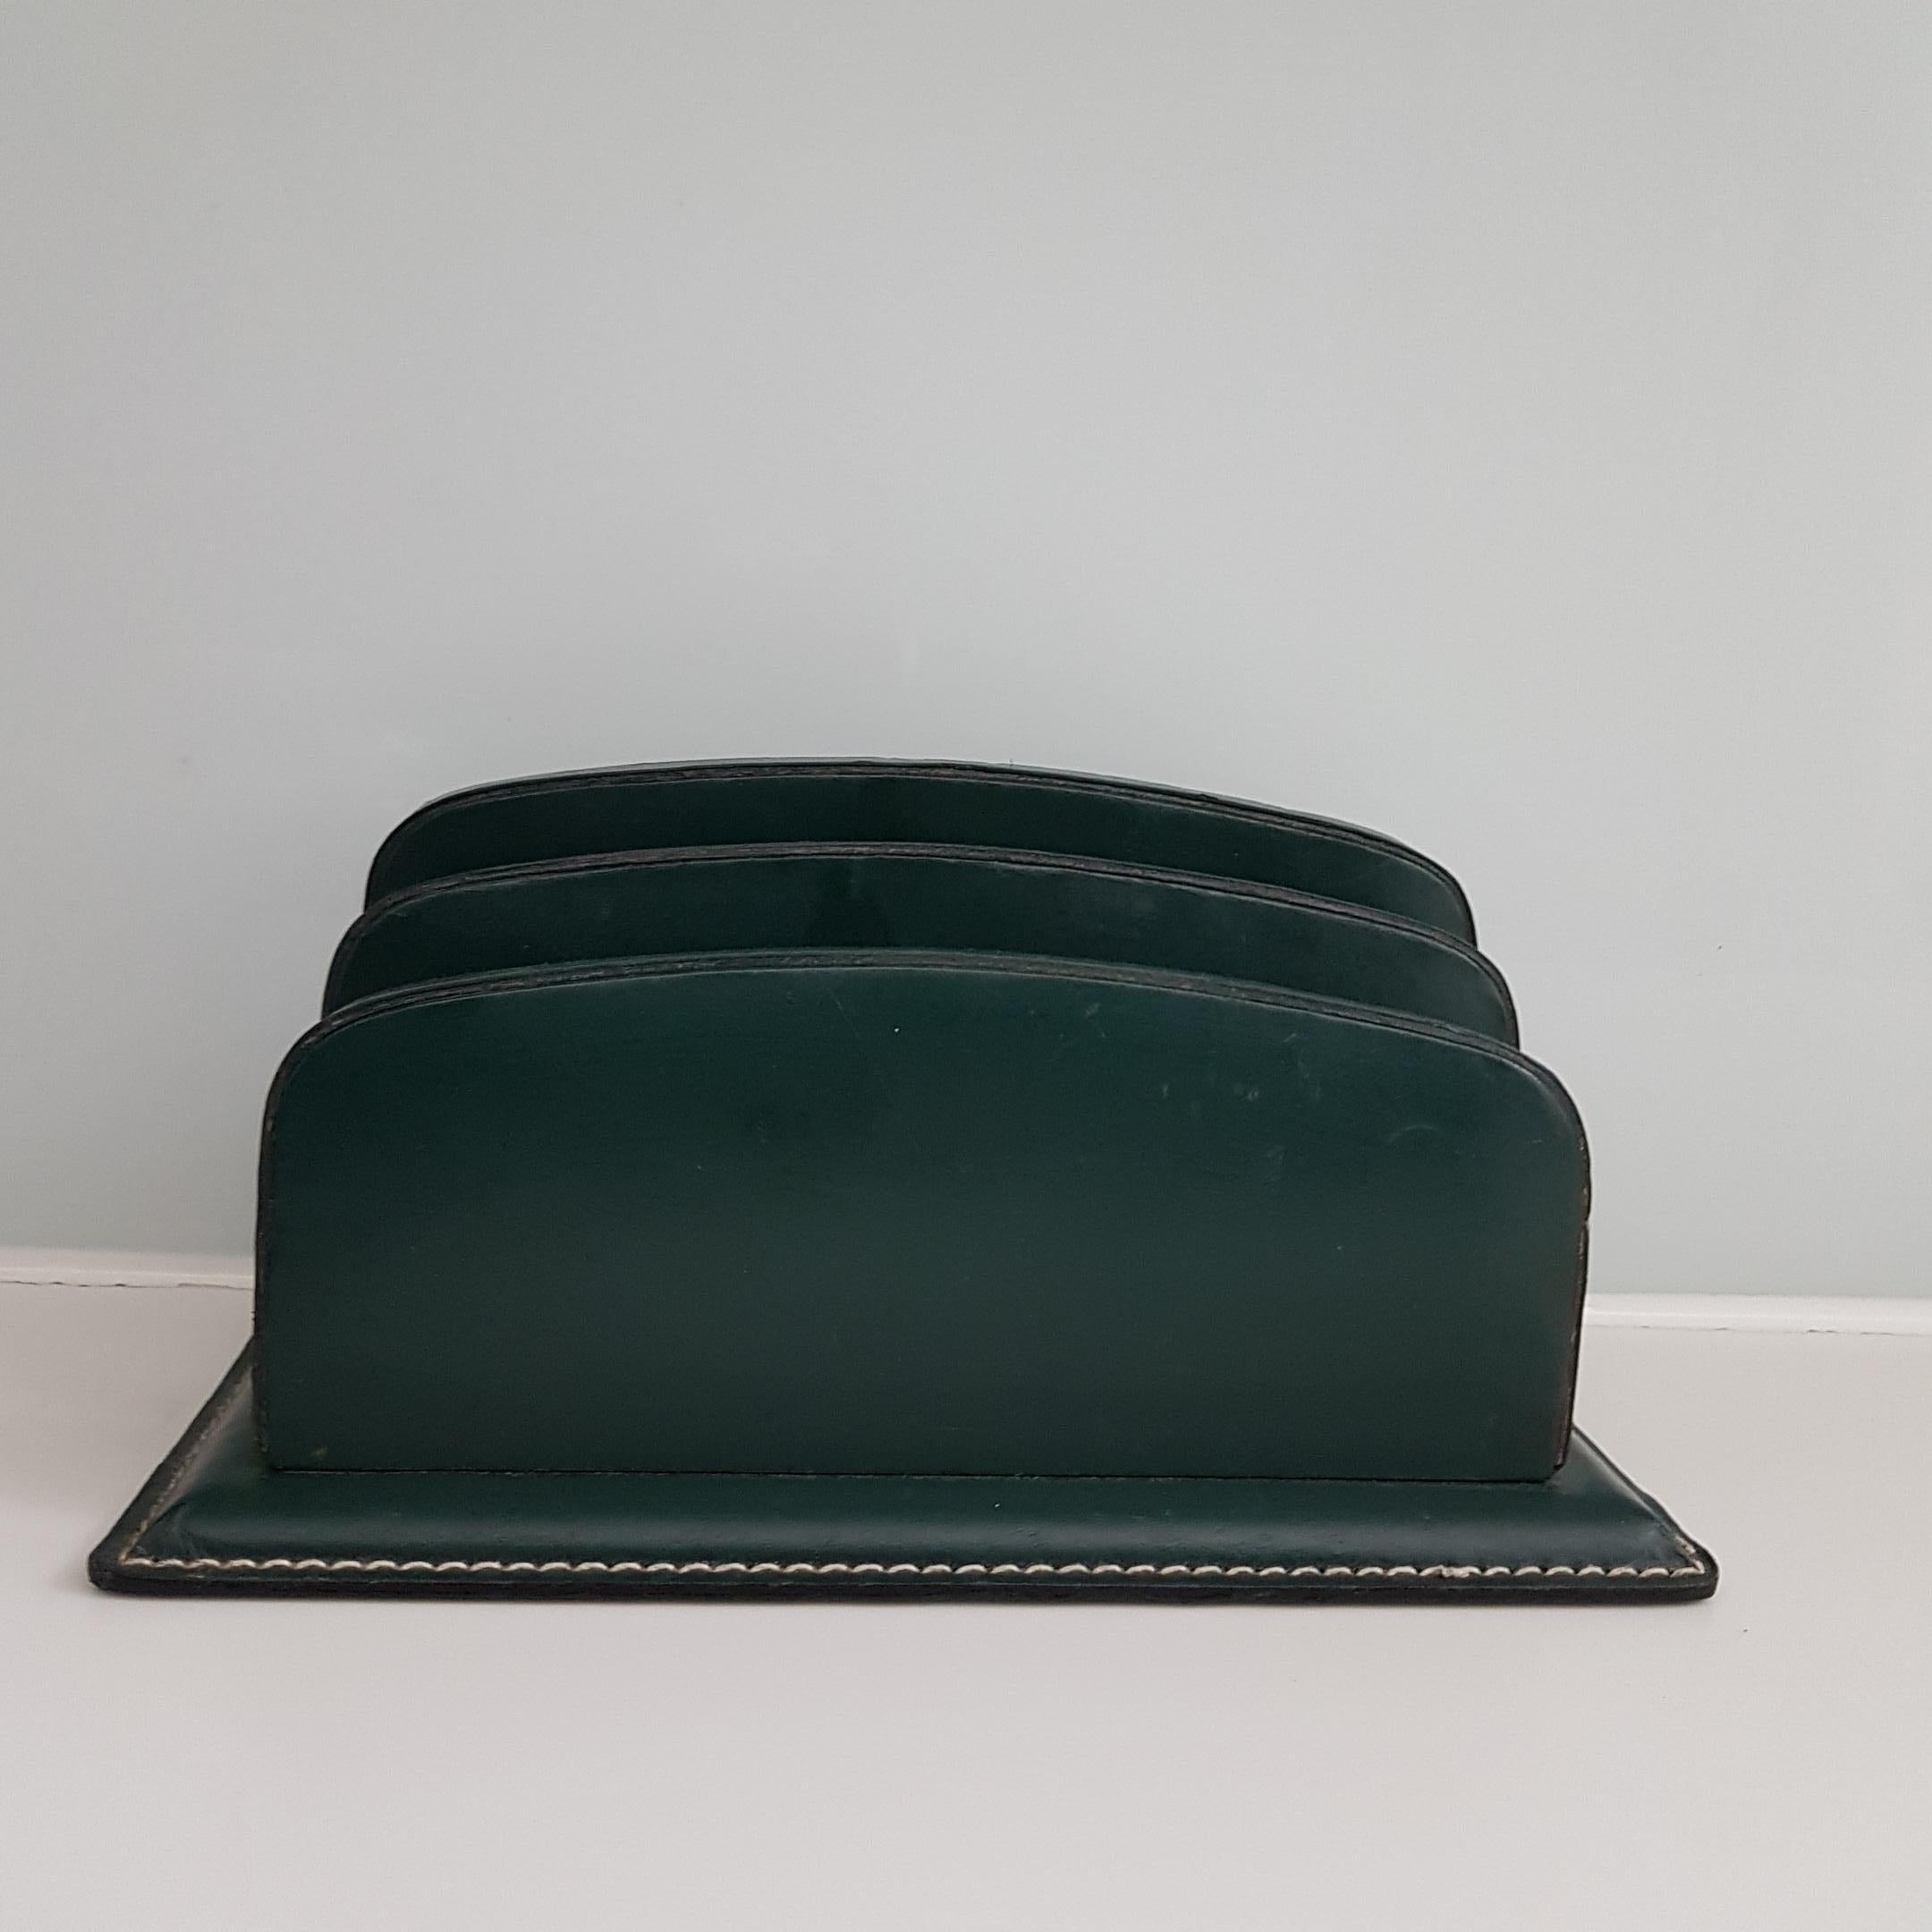 Ein klassisches genähtes Lederschreibtischset in dunkelgrünem Leder, das Jacques Adnet zugeschrieben wird. Das Set besteht aus einer Uhr mit Aufzugsmechanismus und vernickelten, stilisierten Zahlen auf dem Zifferblatt im Art-déco-Stil. Die Uhr, die